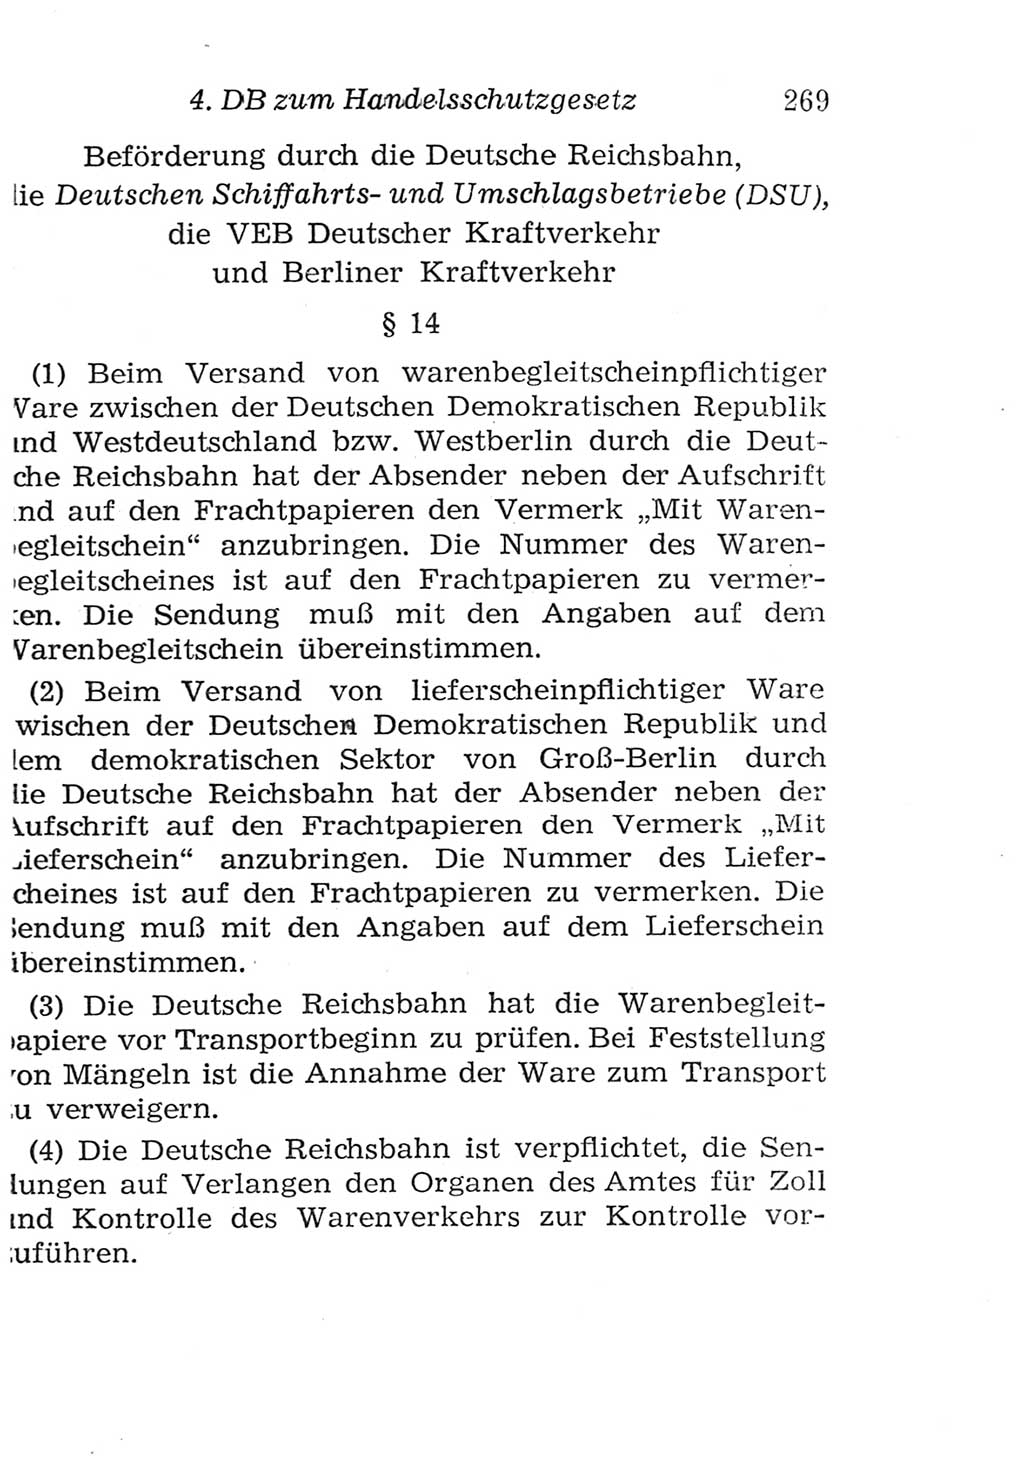 Strafgesetzbuch (StGB) und andere Strafgesetze [Deutsche Demokratische Republik (DDR)] 1957, Seite 269 (StGB Strafges. DDR 1957, S. 269)